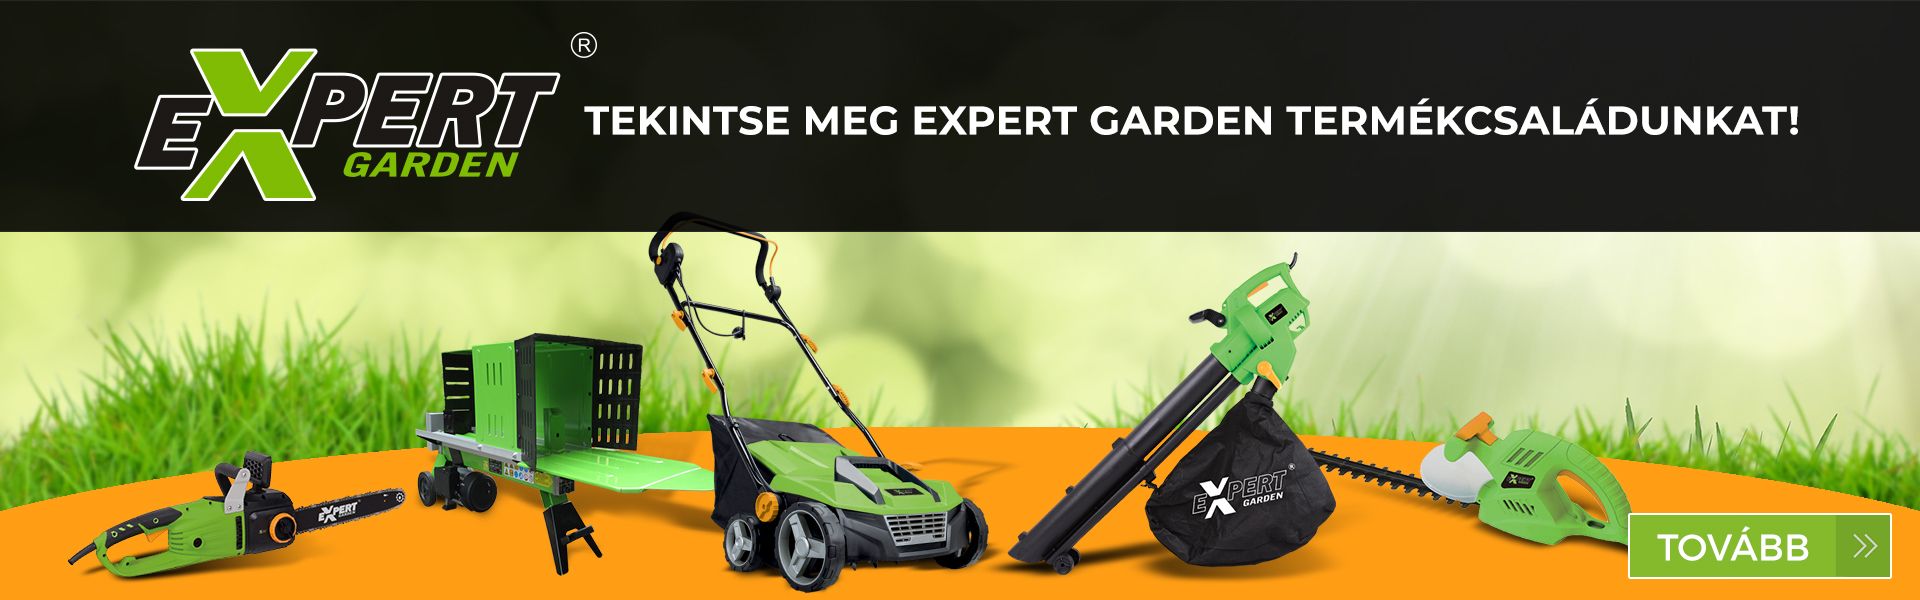 Expert garden